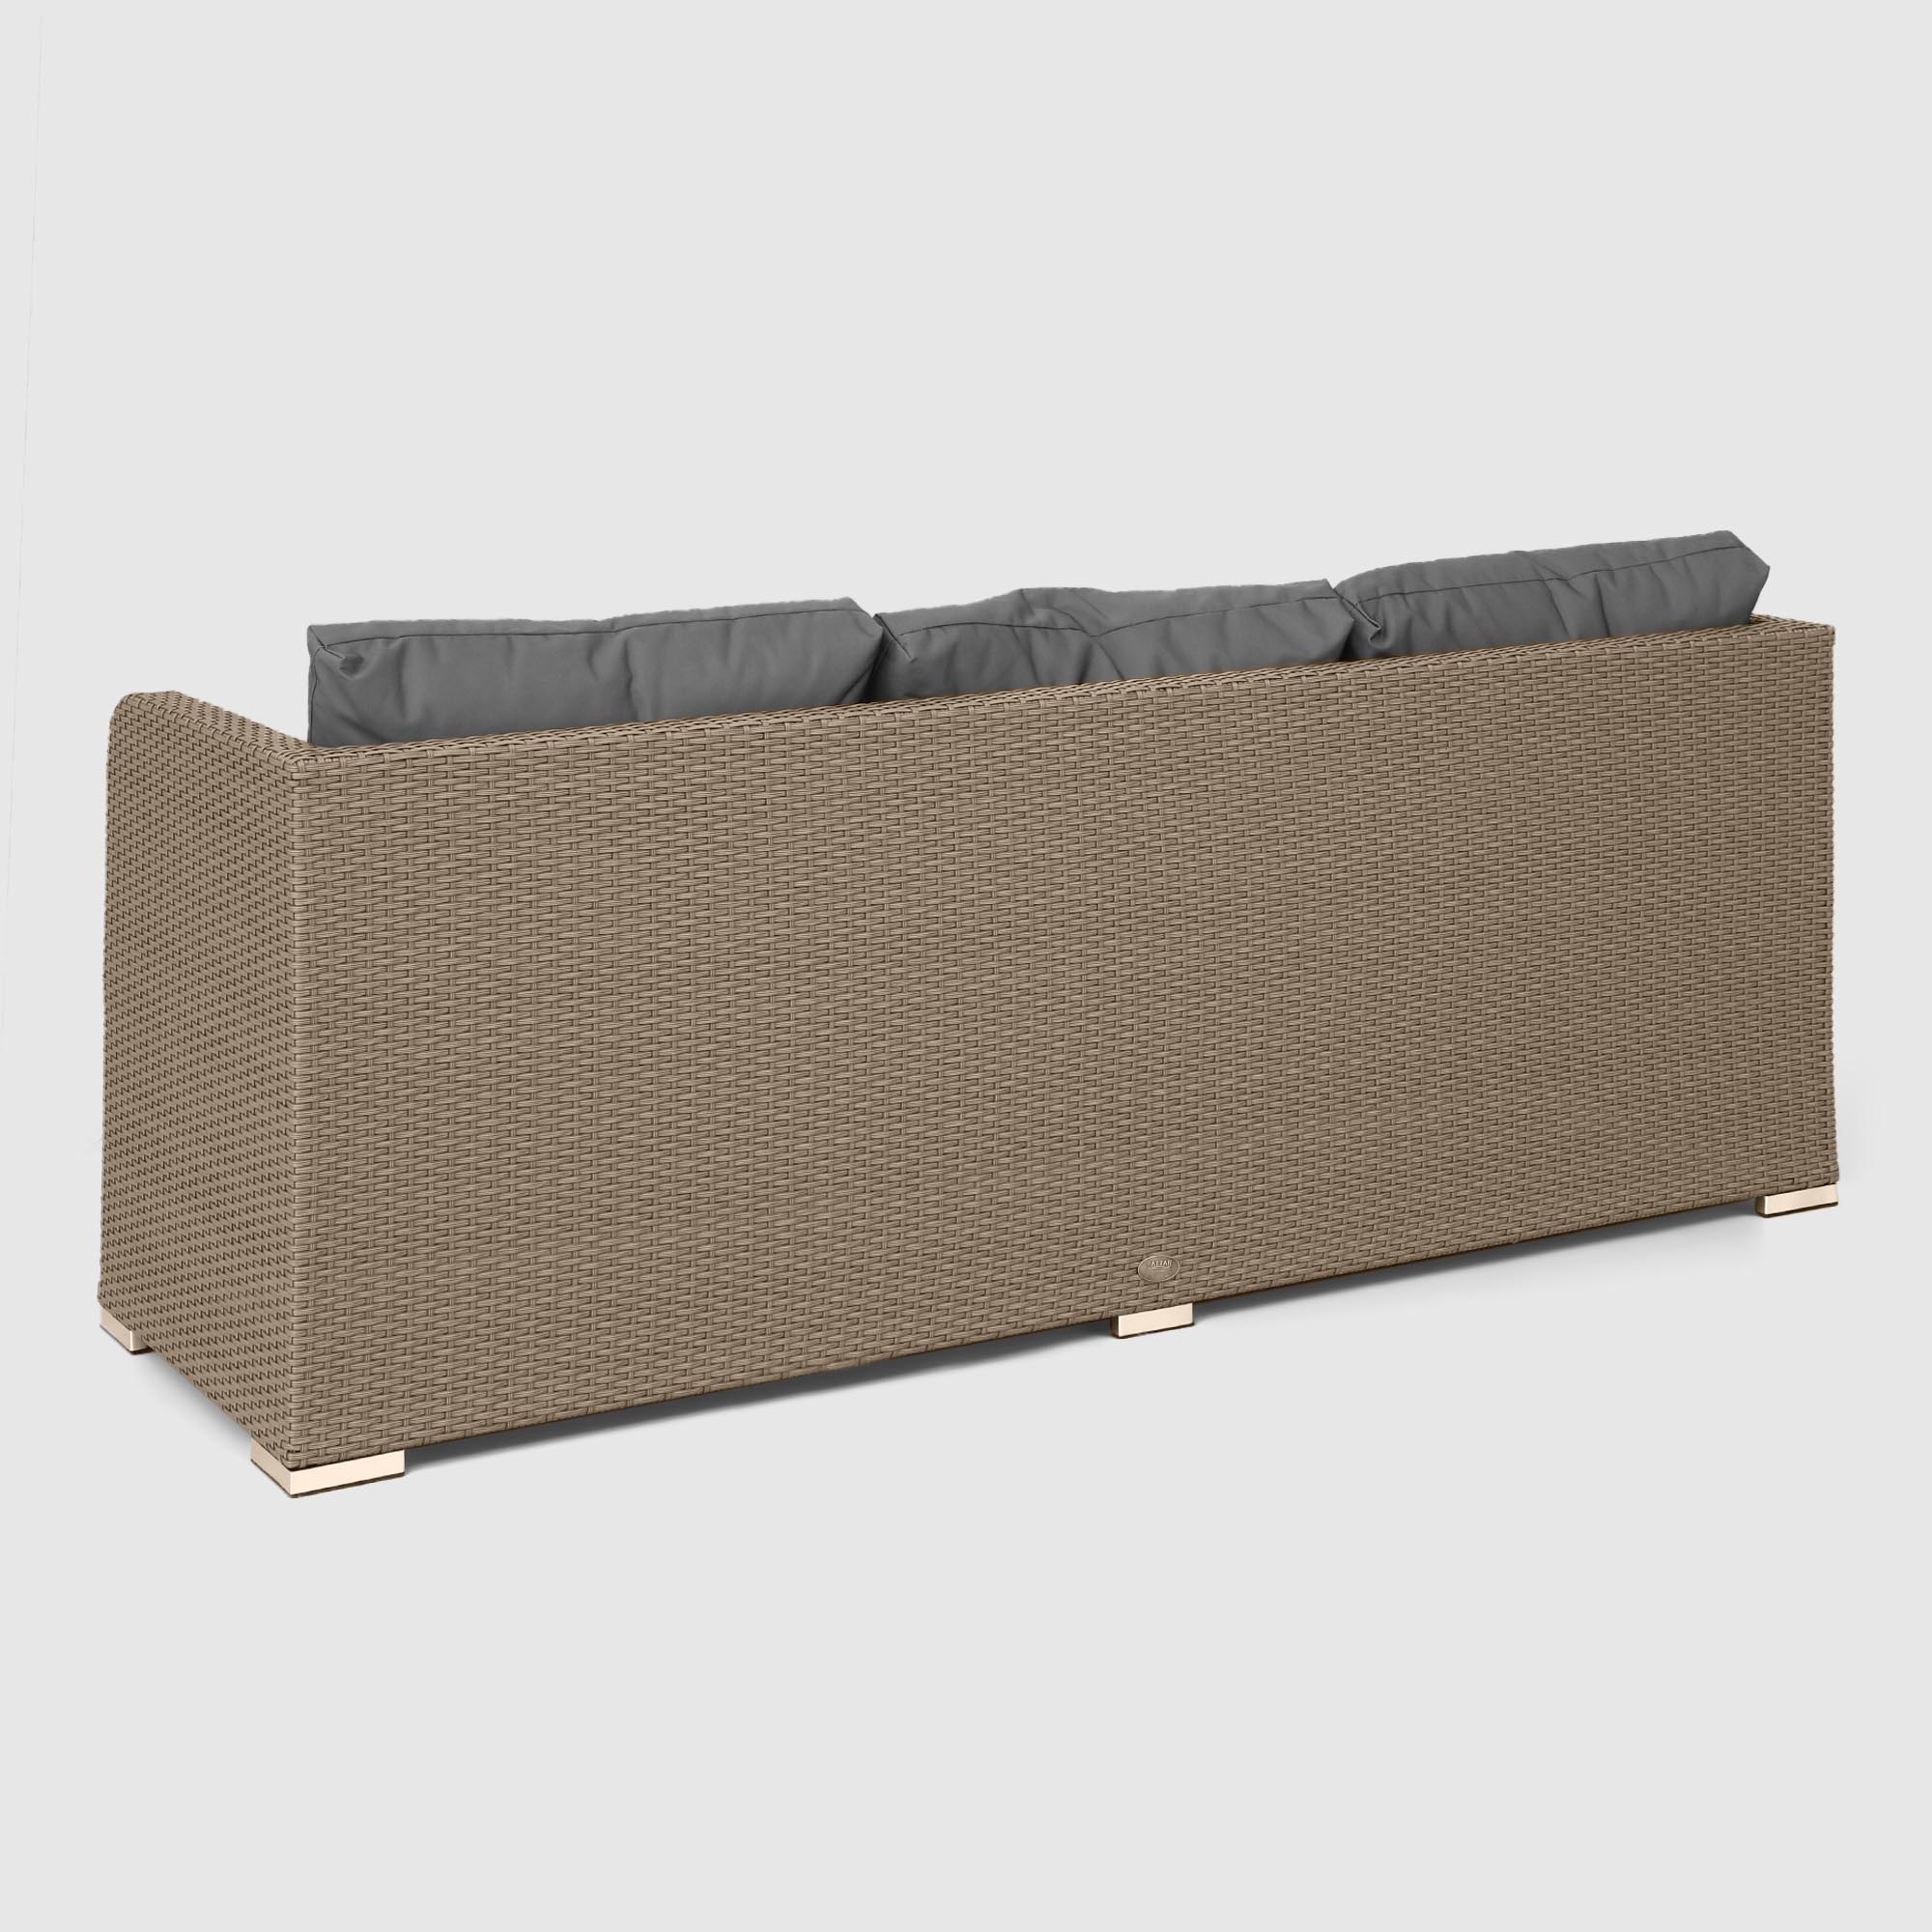 Комплект мебели NS Rattan LWS 21 коричневый с серым 3 предмета, цвет светло-коричневый, размер 220х75х75 - фото 14